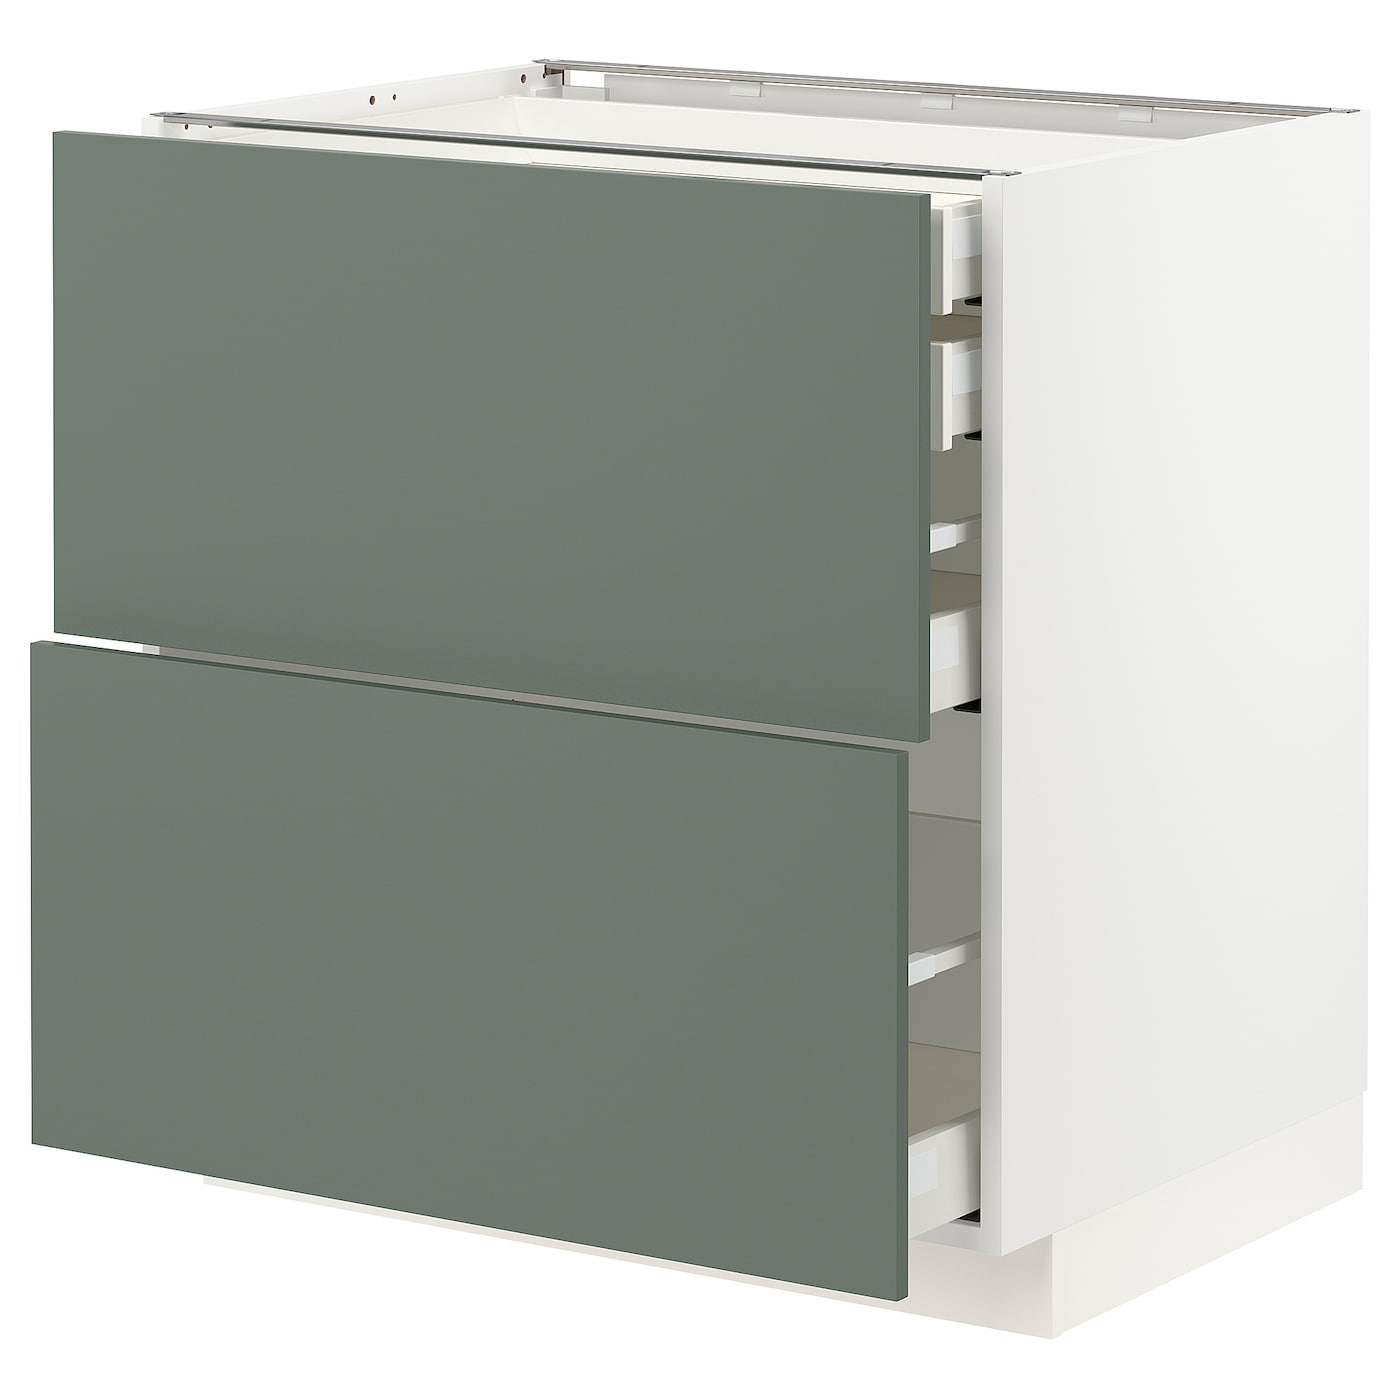 Напольный кухонный шкаф  - IKEA METOD MAXIMERA, 88x61,6x80см, белый/серый, МЕТОД МАКСИМЕРА ИКЕА